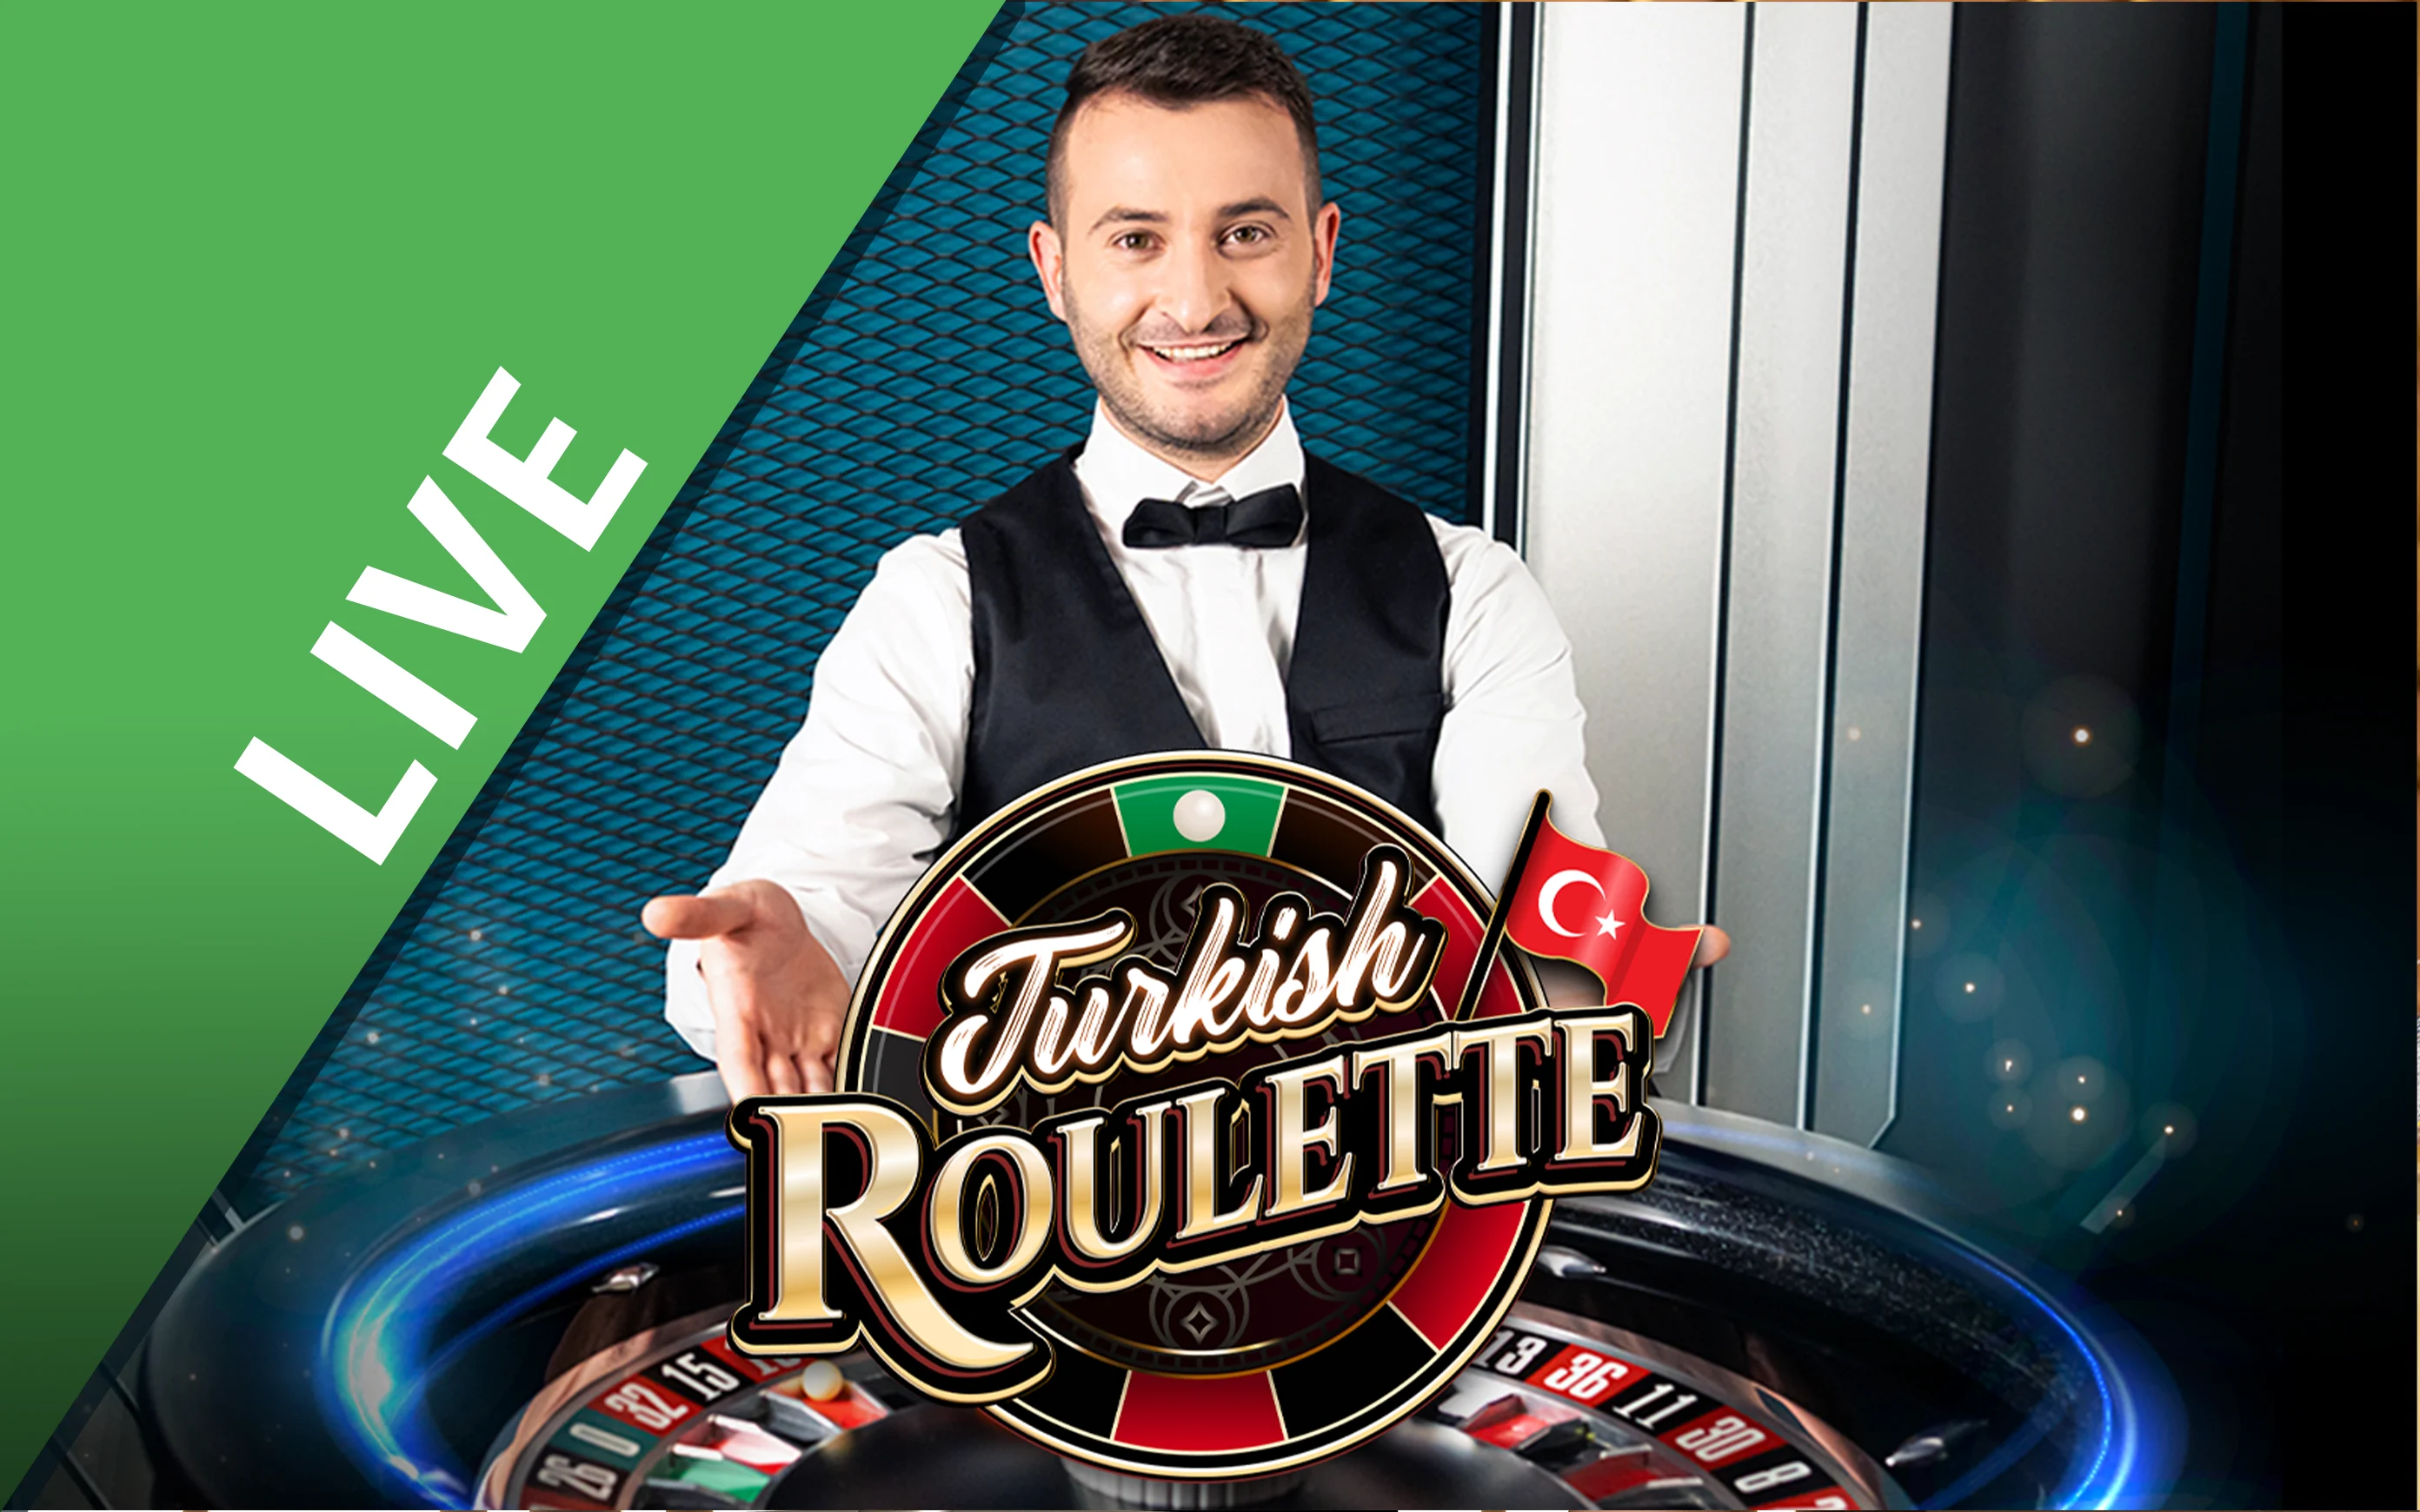 Gioca a Turkish Roulette sul casino online Starcasino.be